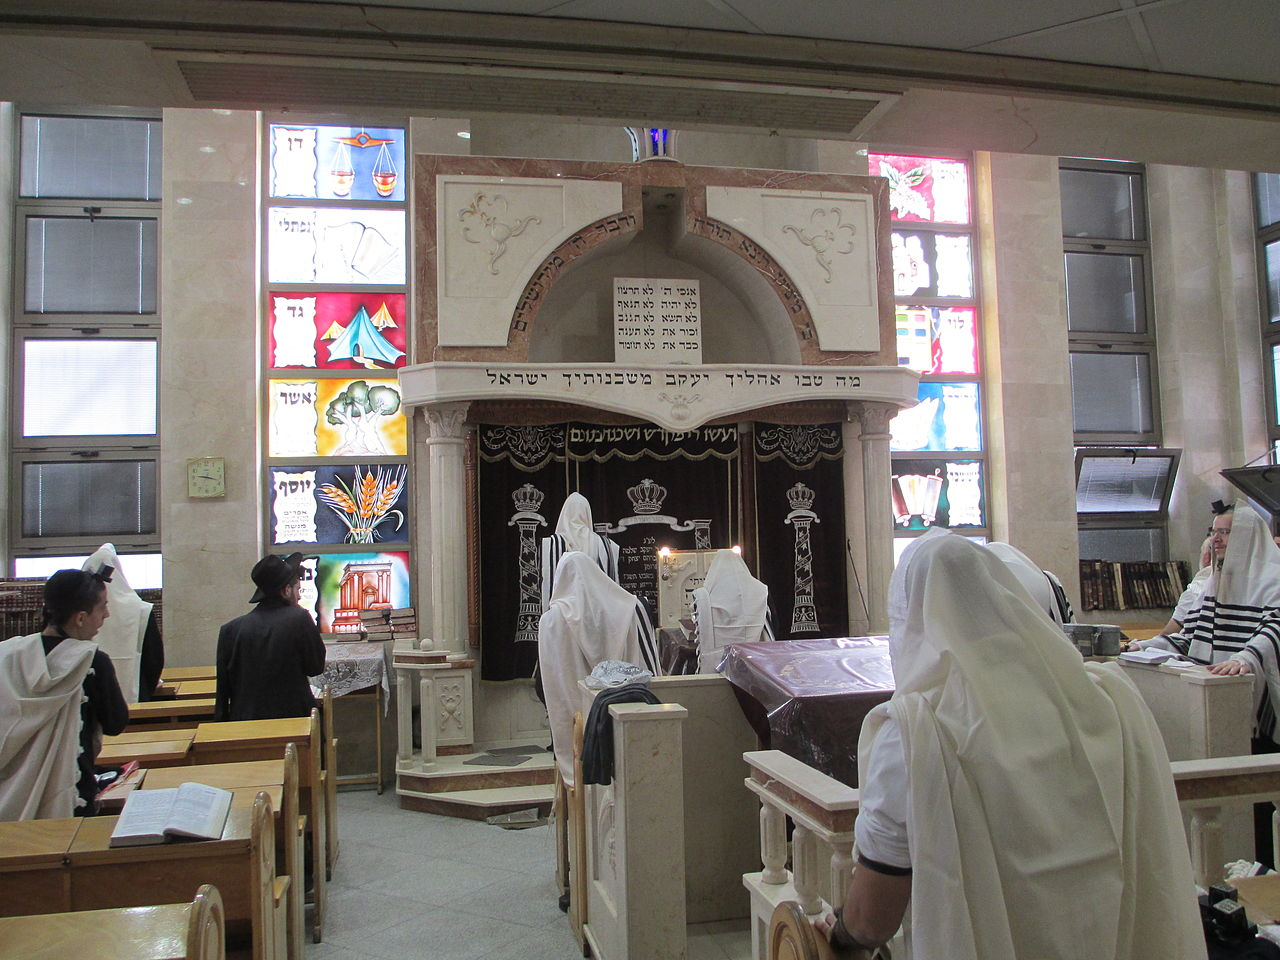 תפילה במניין בבית הכנסת איצקוביץ' בבני ברק. צילום: ד"ר אבישי טייכר, ויקיפדיה